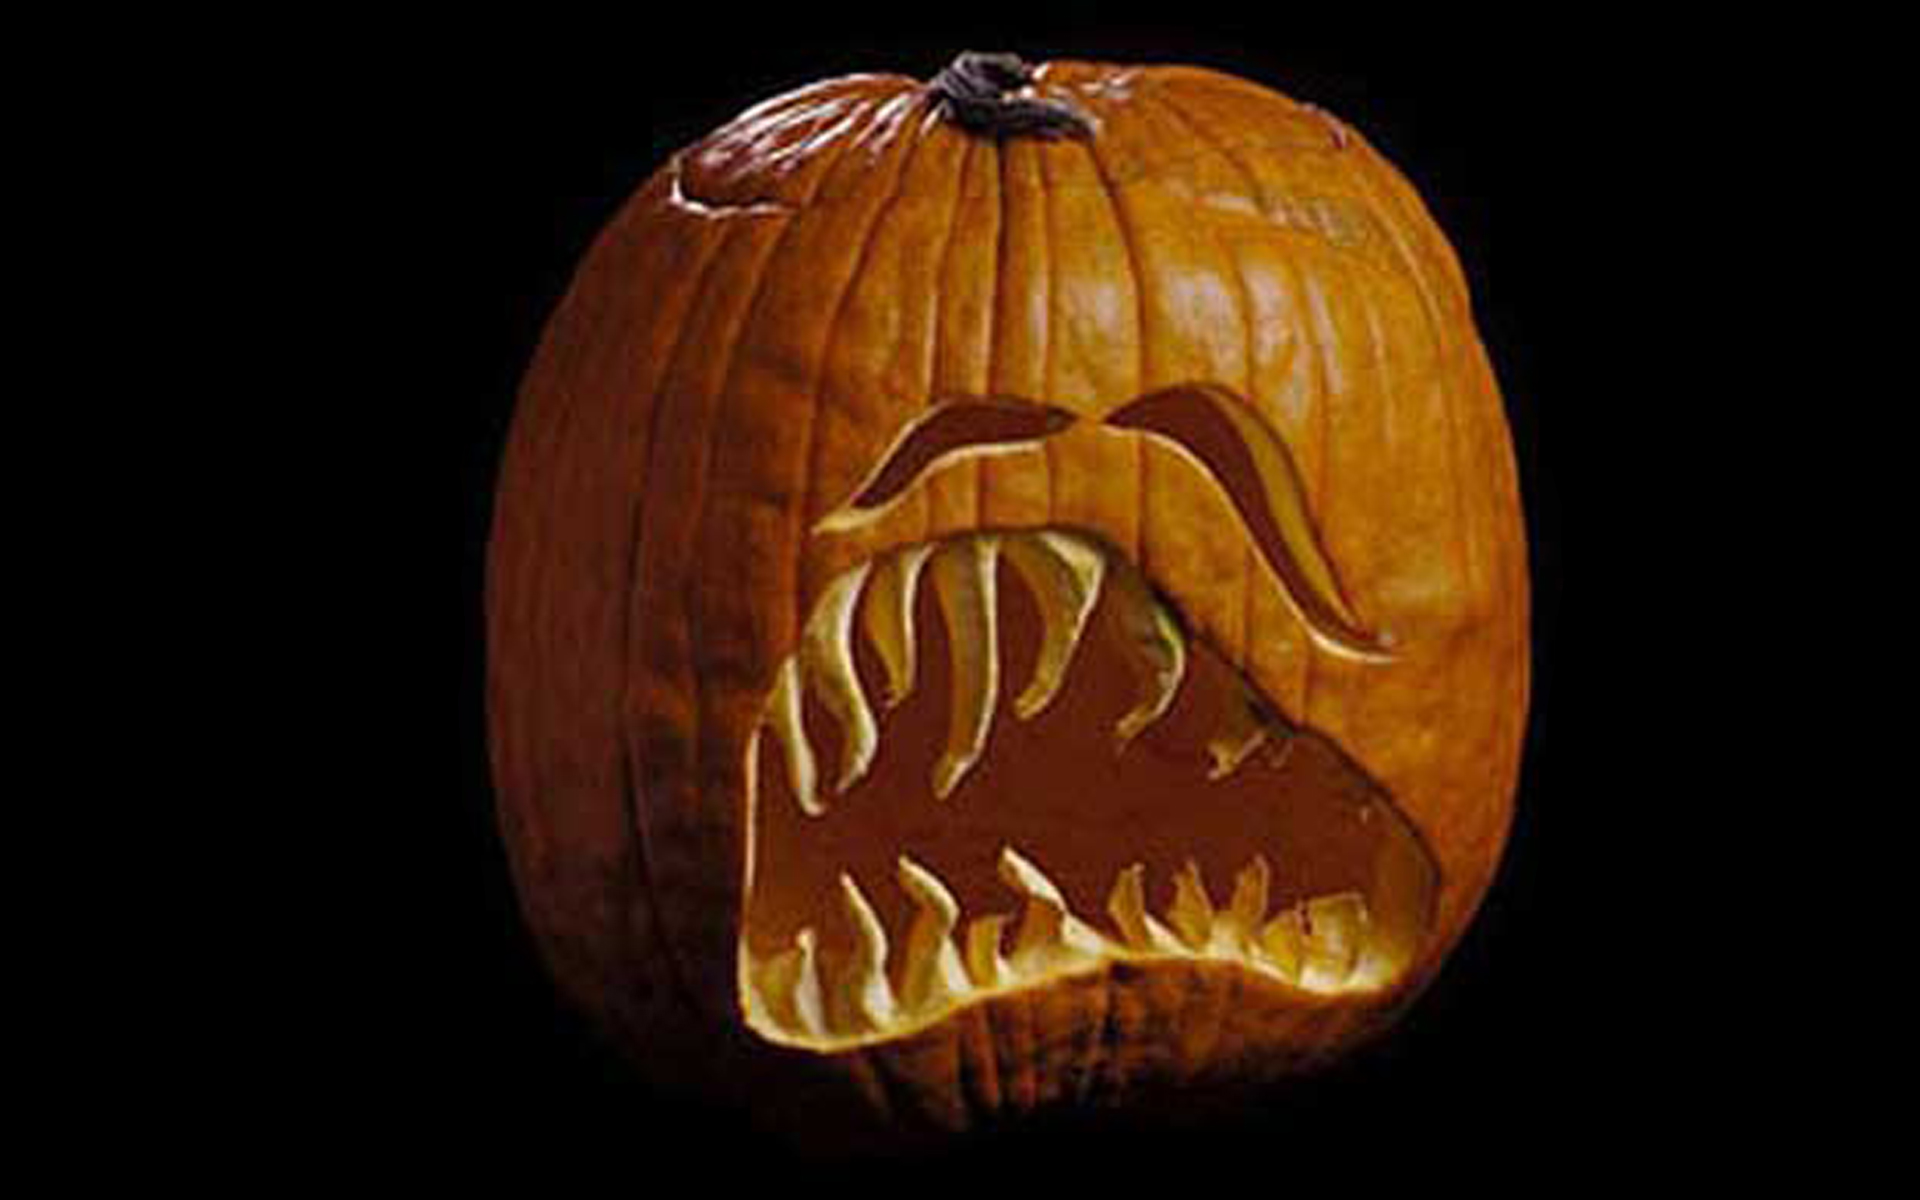 Sad Face Halloween Pumpkin Carving. 